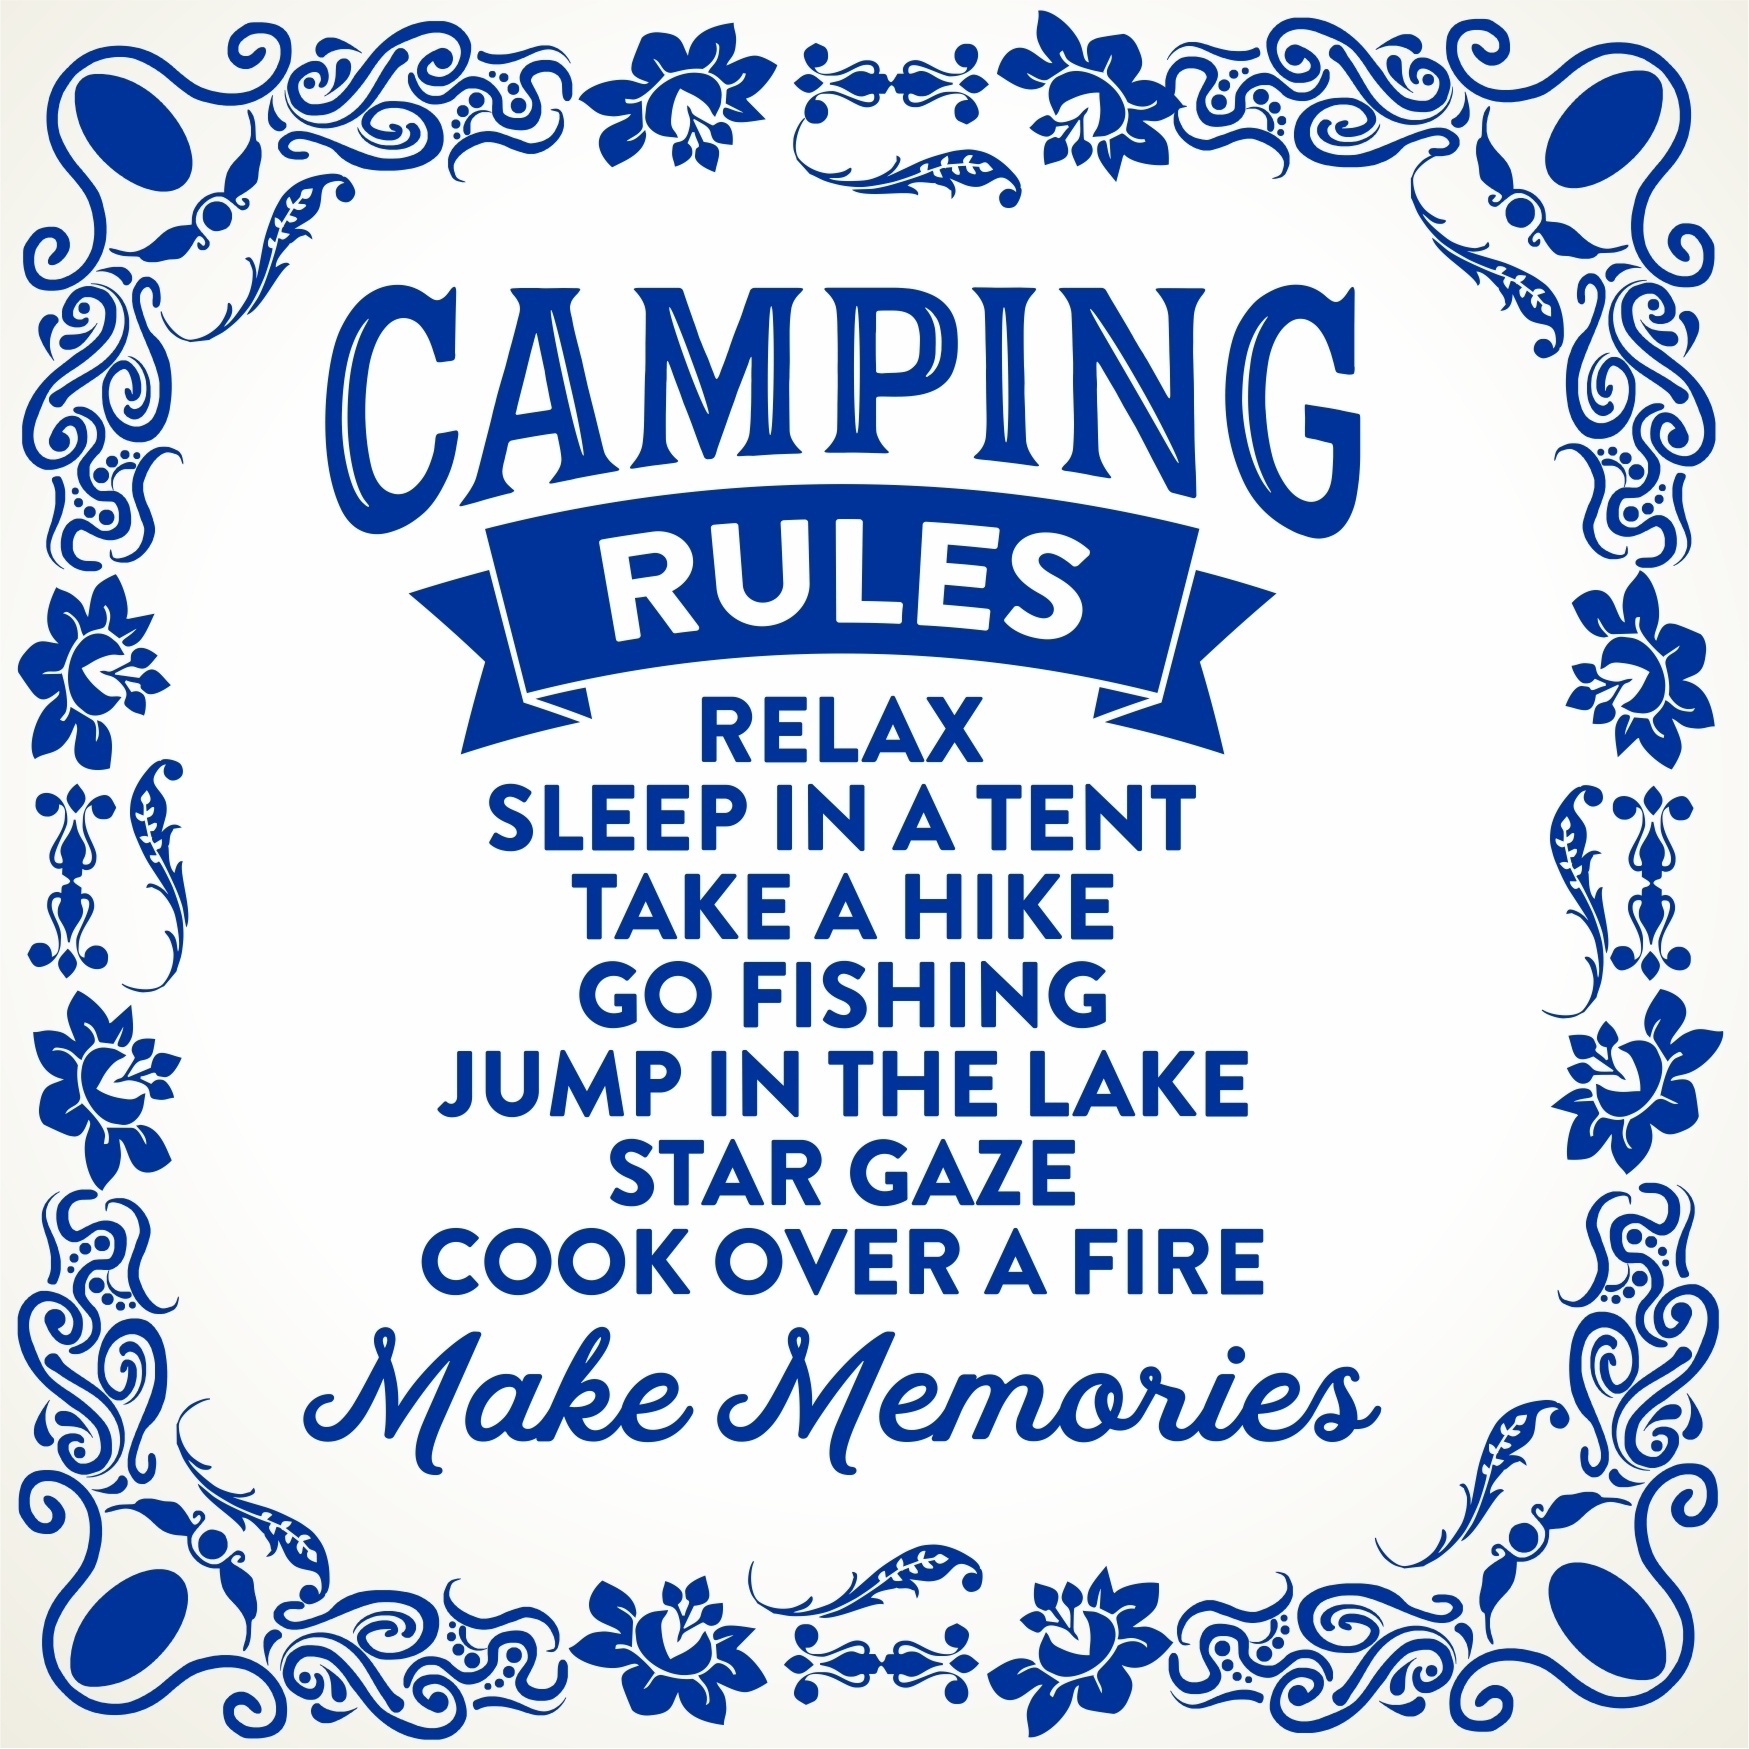 Spreukentegel met regels voor op de camping! Hele fijne regels!